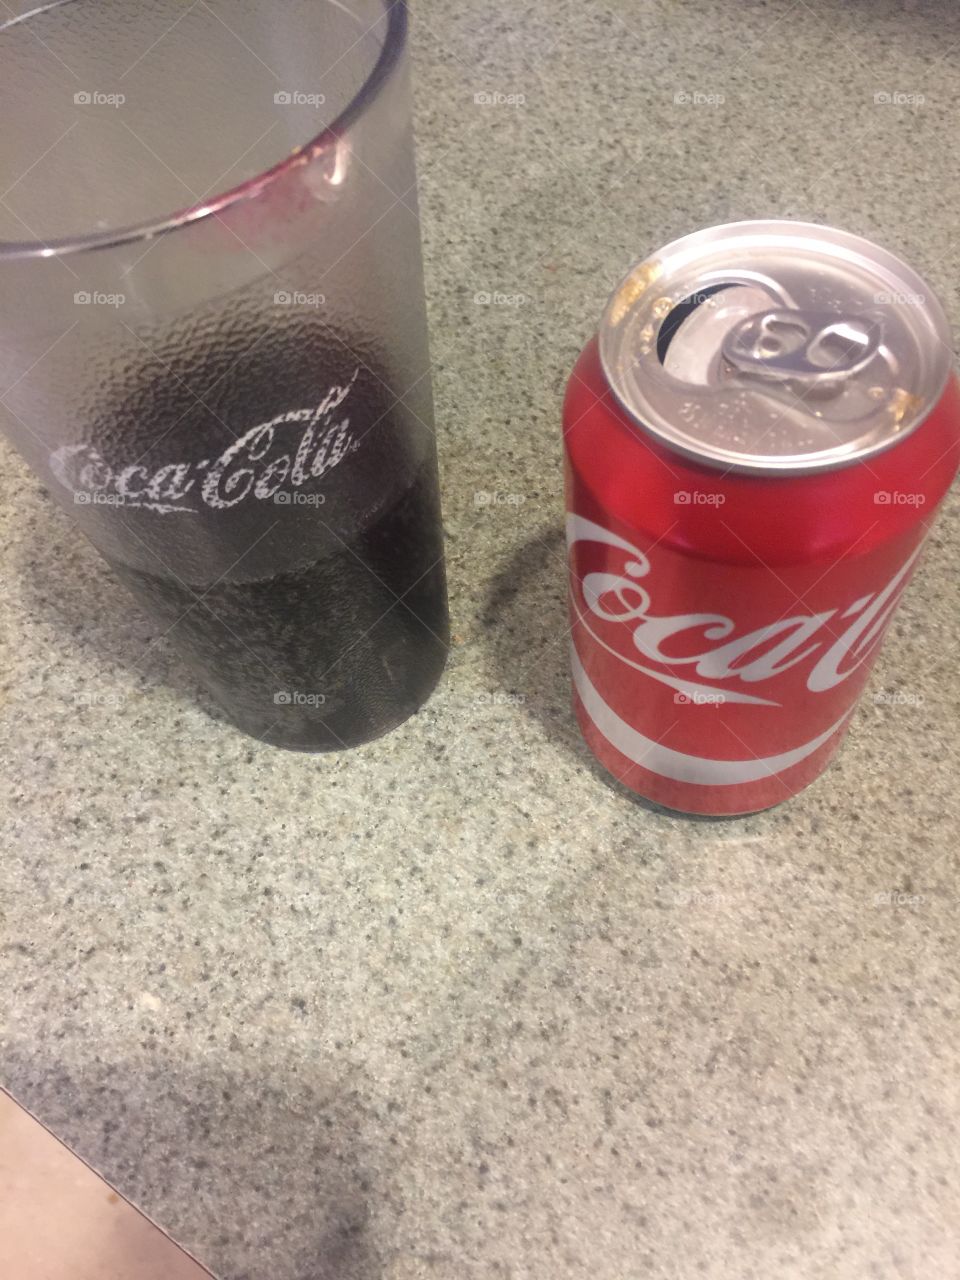 Coke Coca Cola